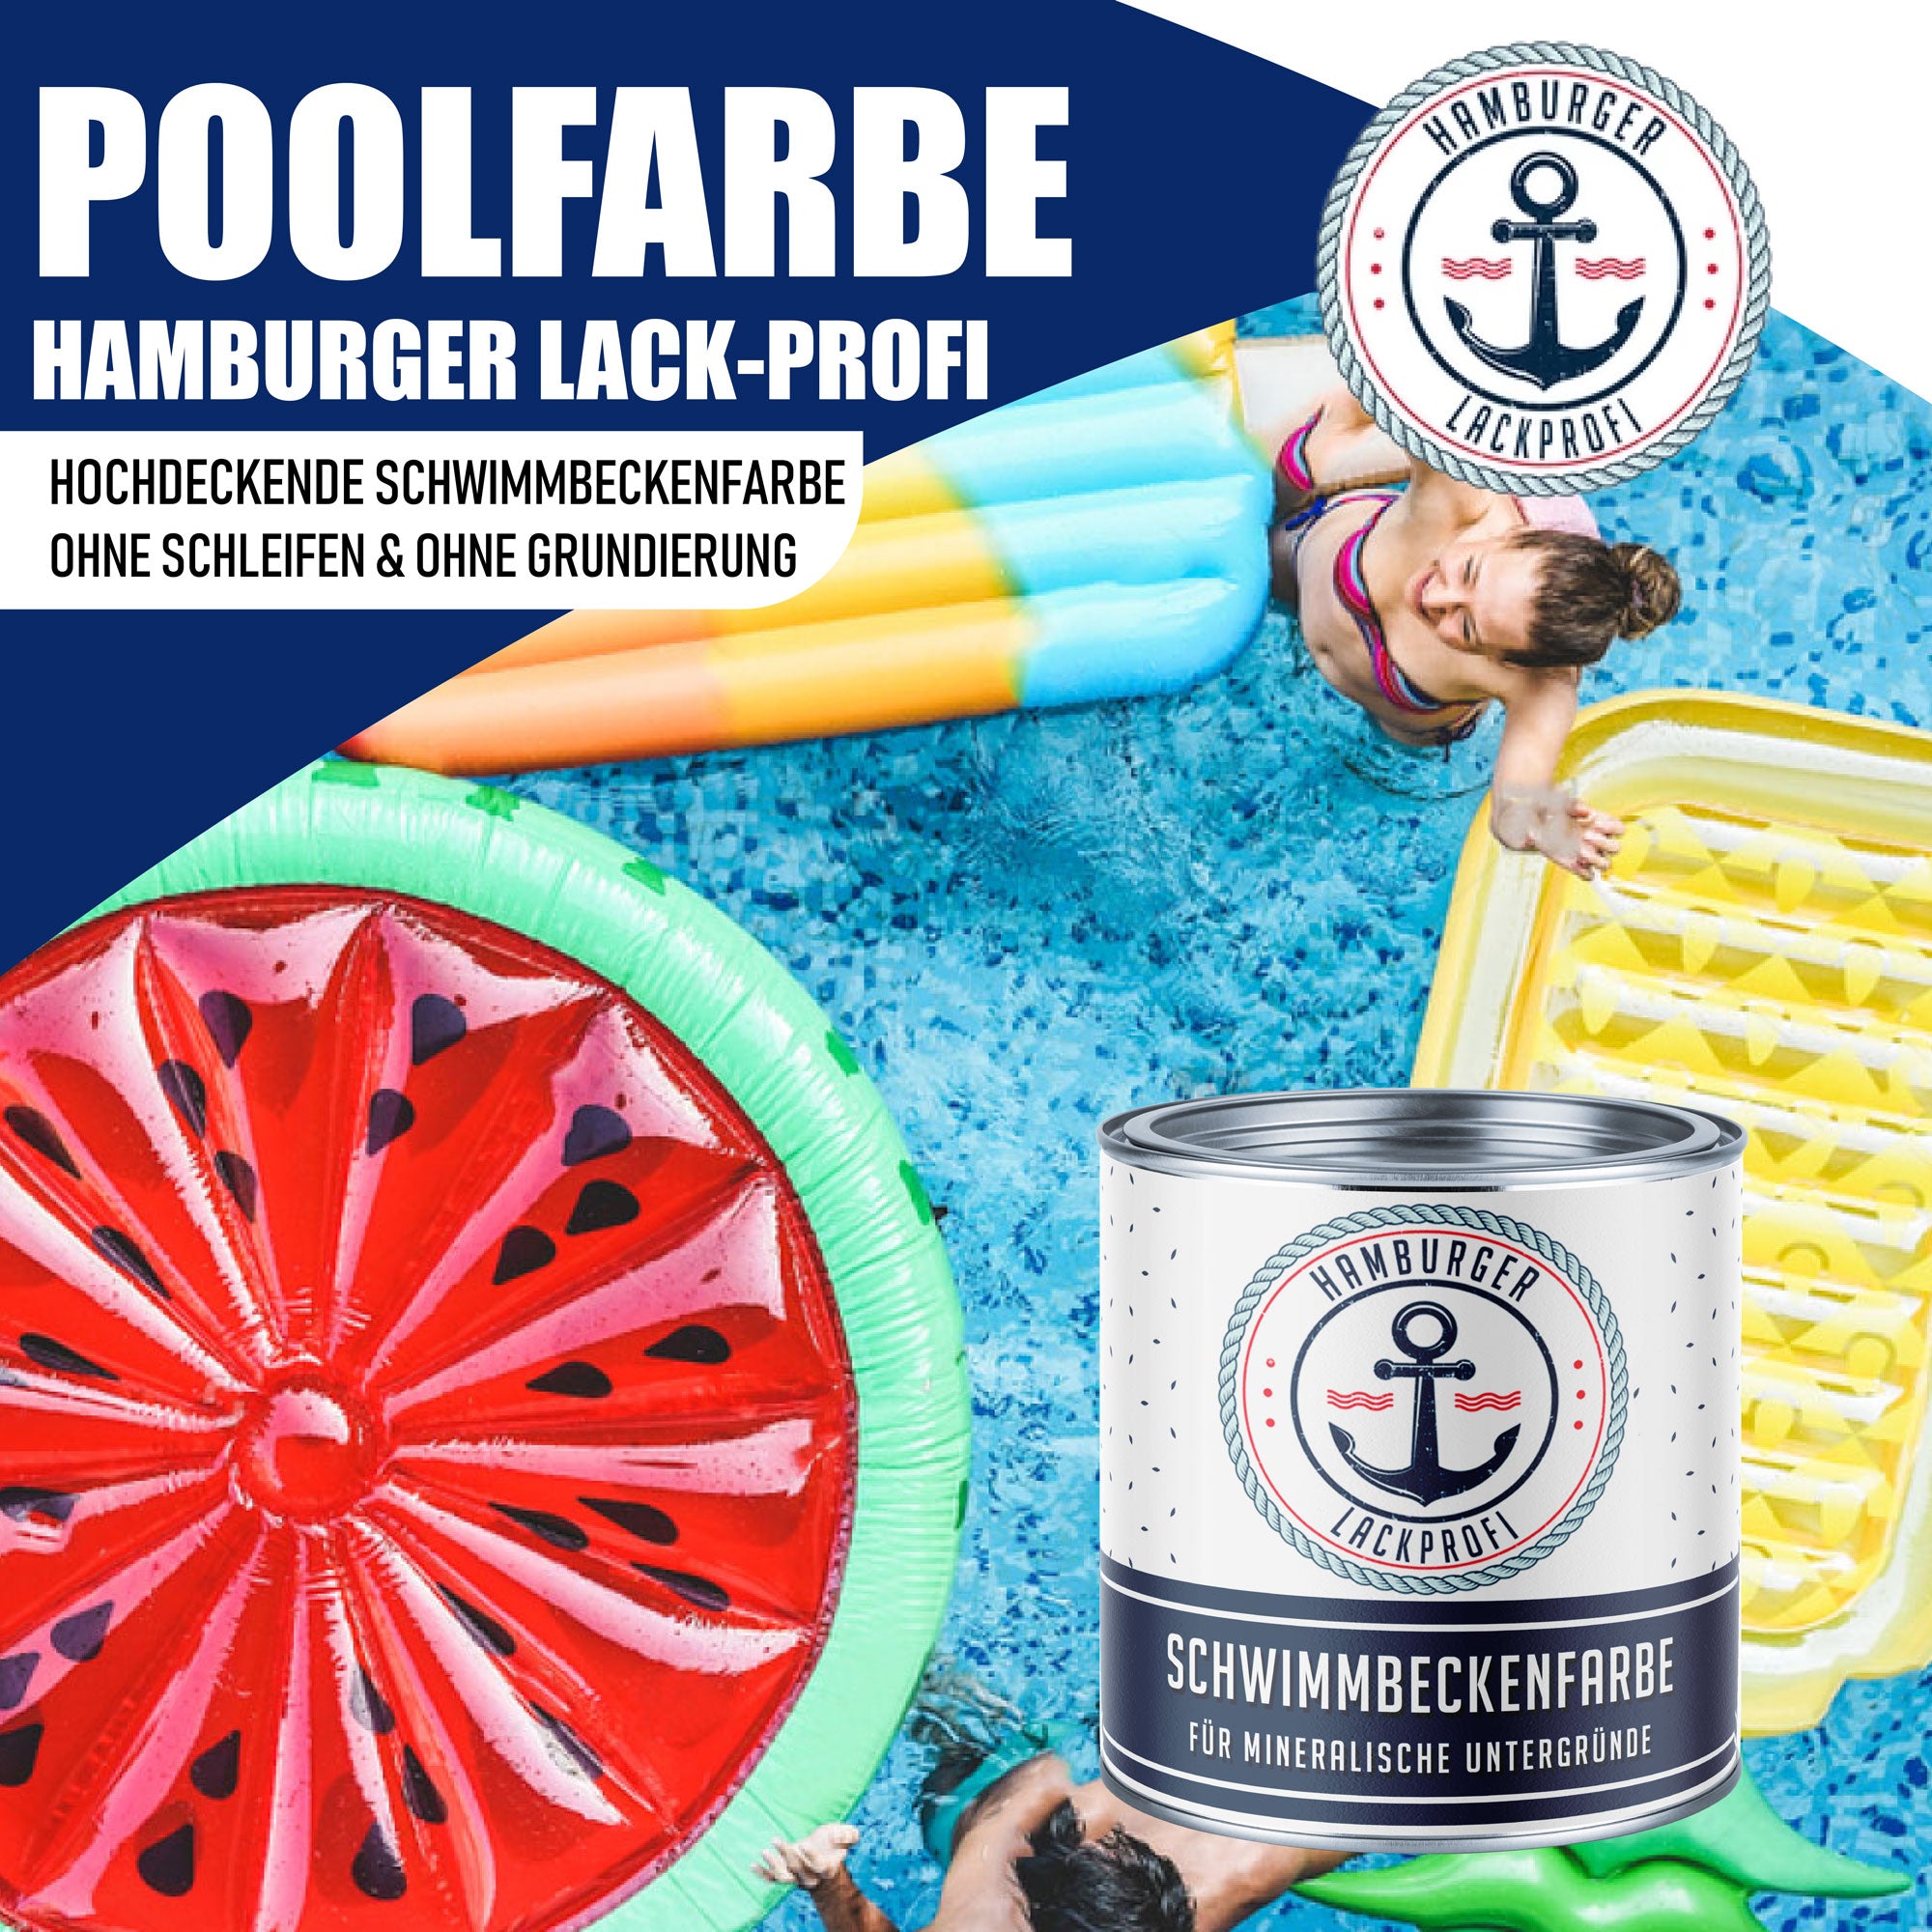 Hamburger Lack-Profi Schwimmbeckenfarbe Gelbgrün RAL 6018 - hochdeckende Poolfarbe